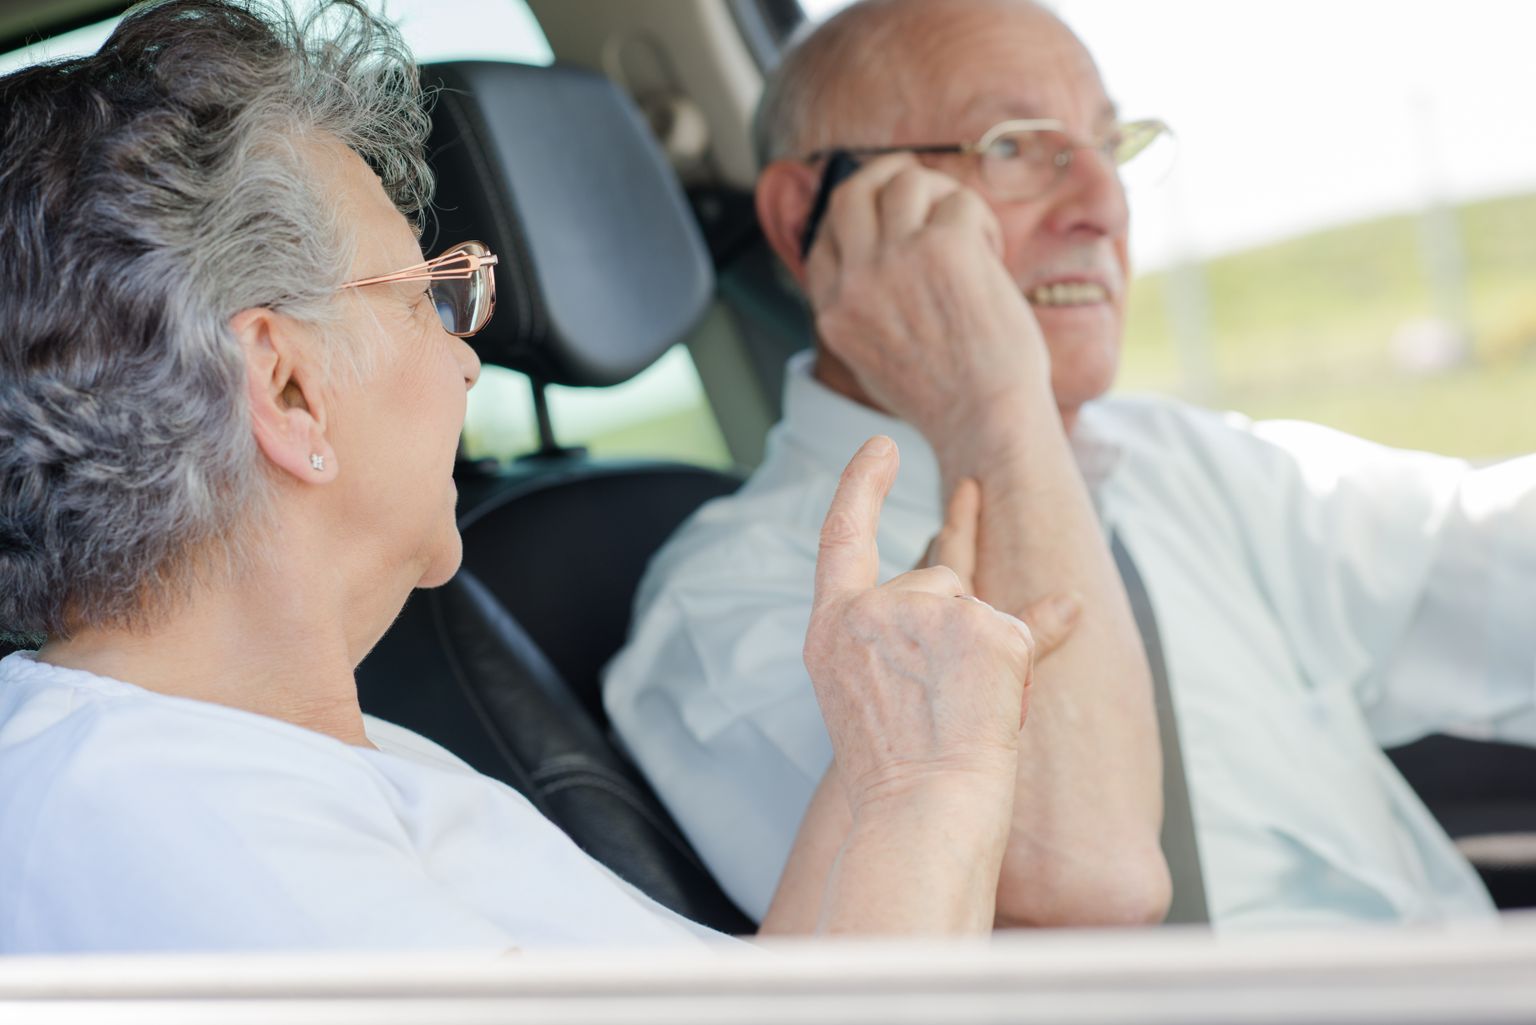 Dementsusele võivad viidata raskused auto juhtimisega.